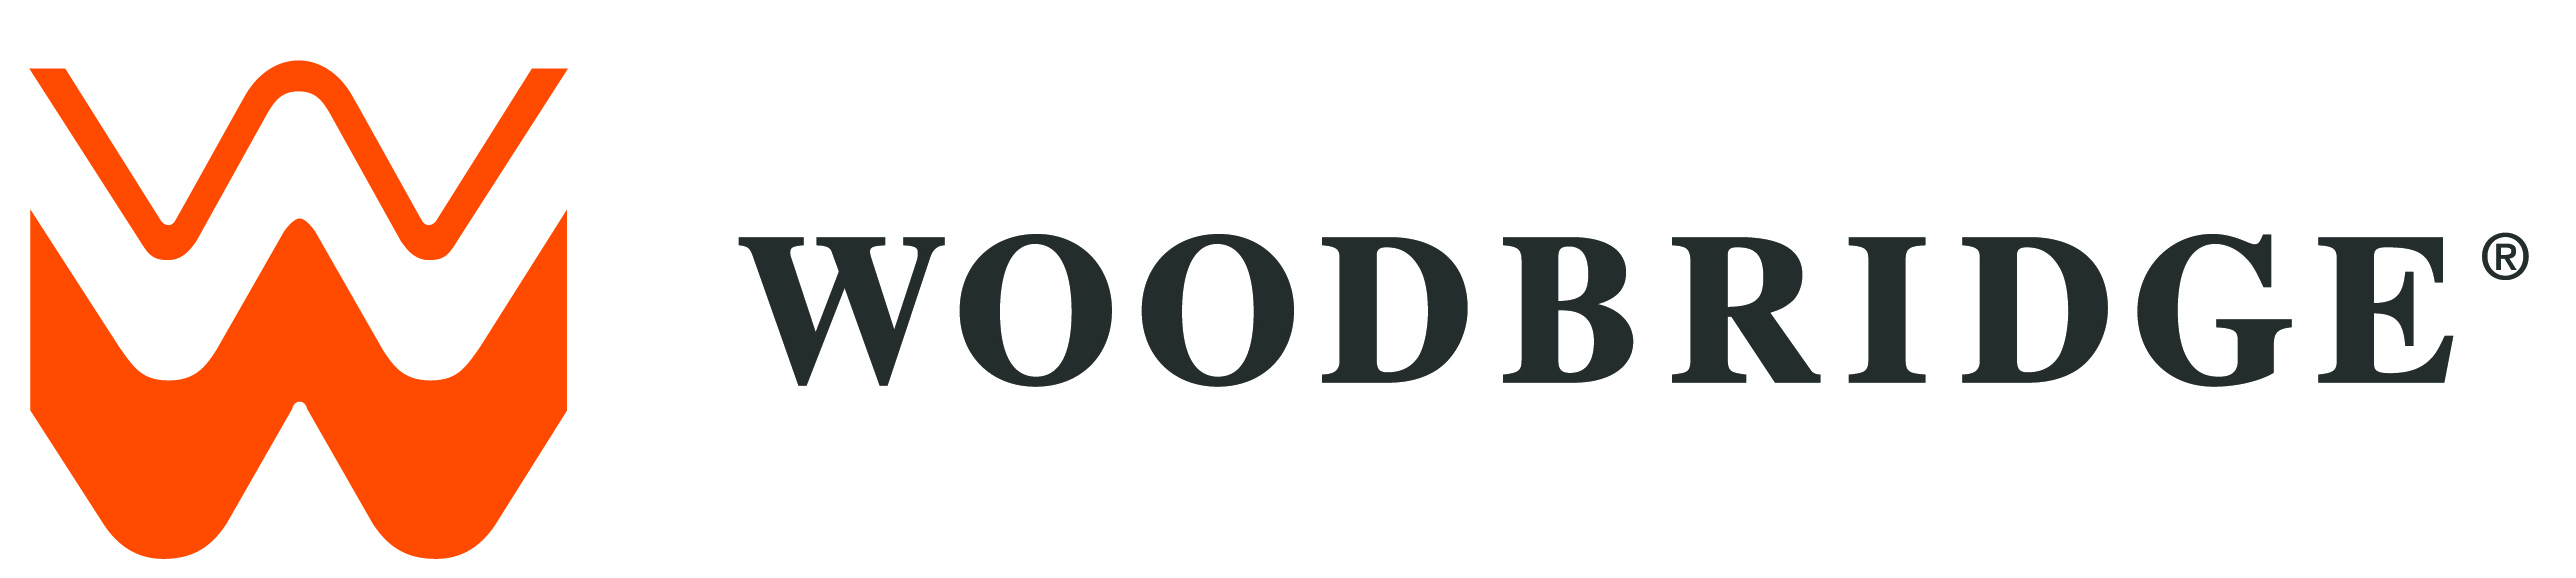 Woodbrdge Logo